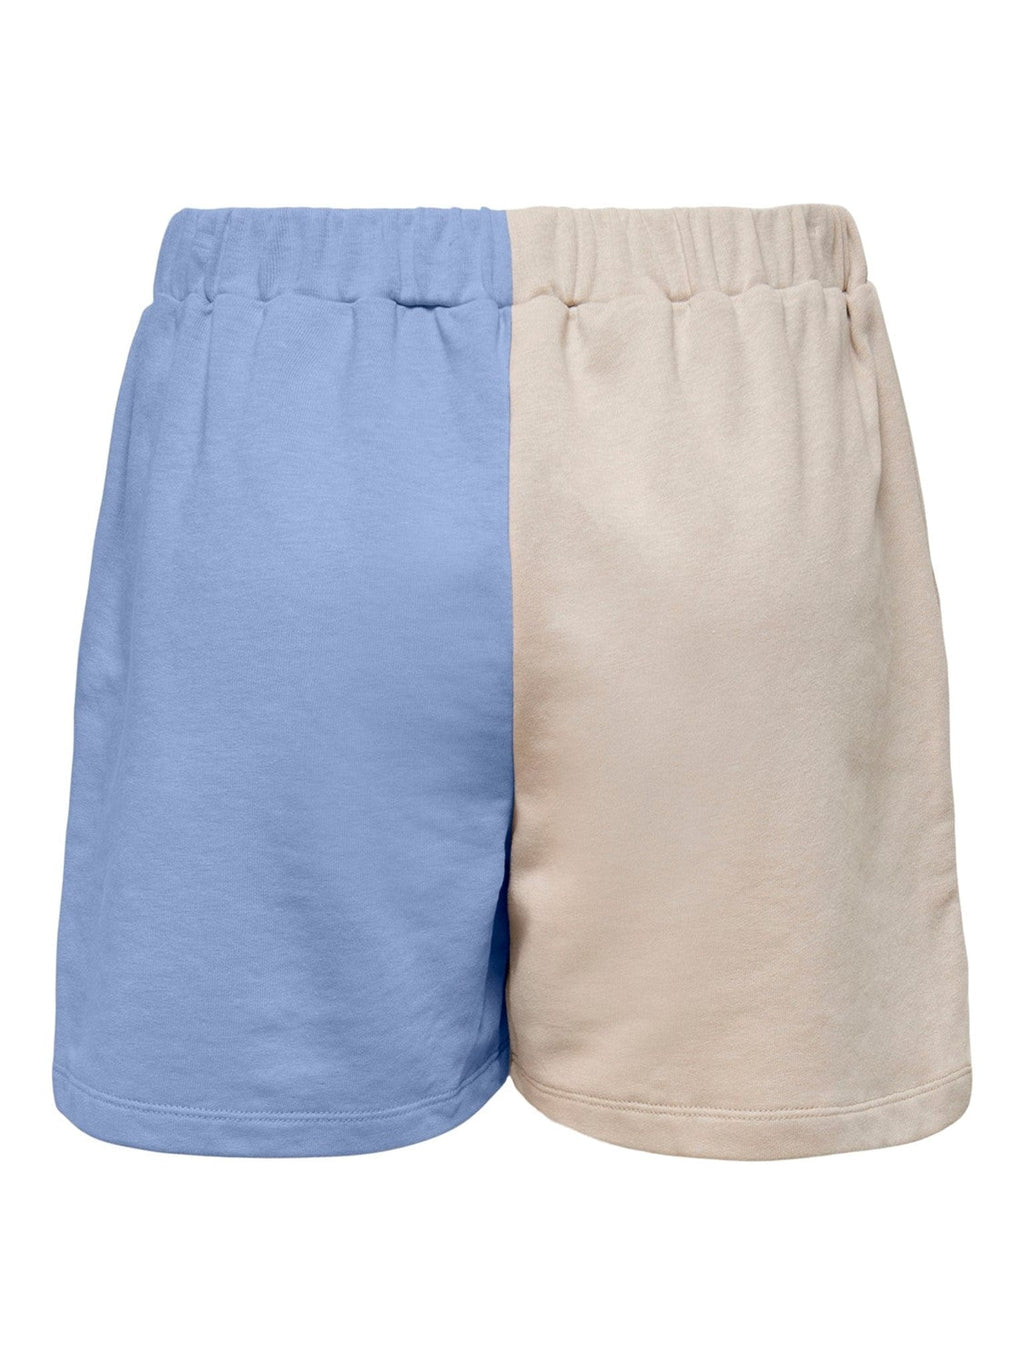 Μπλοκ χρωμάτων Mera Shorts - άμμος / μπλε